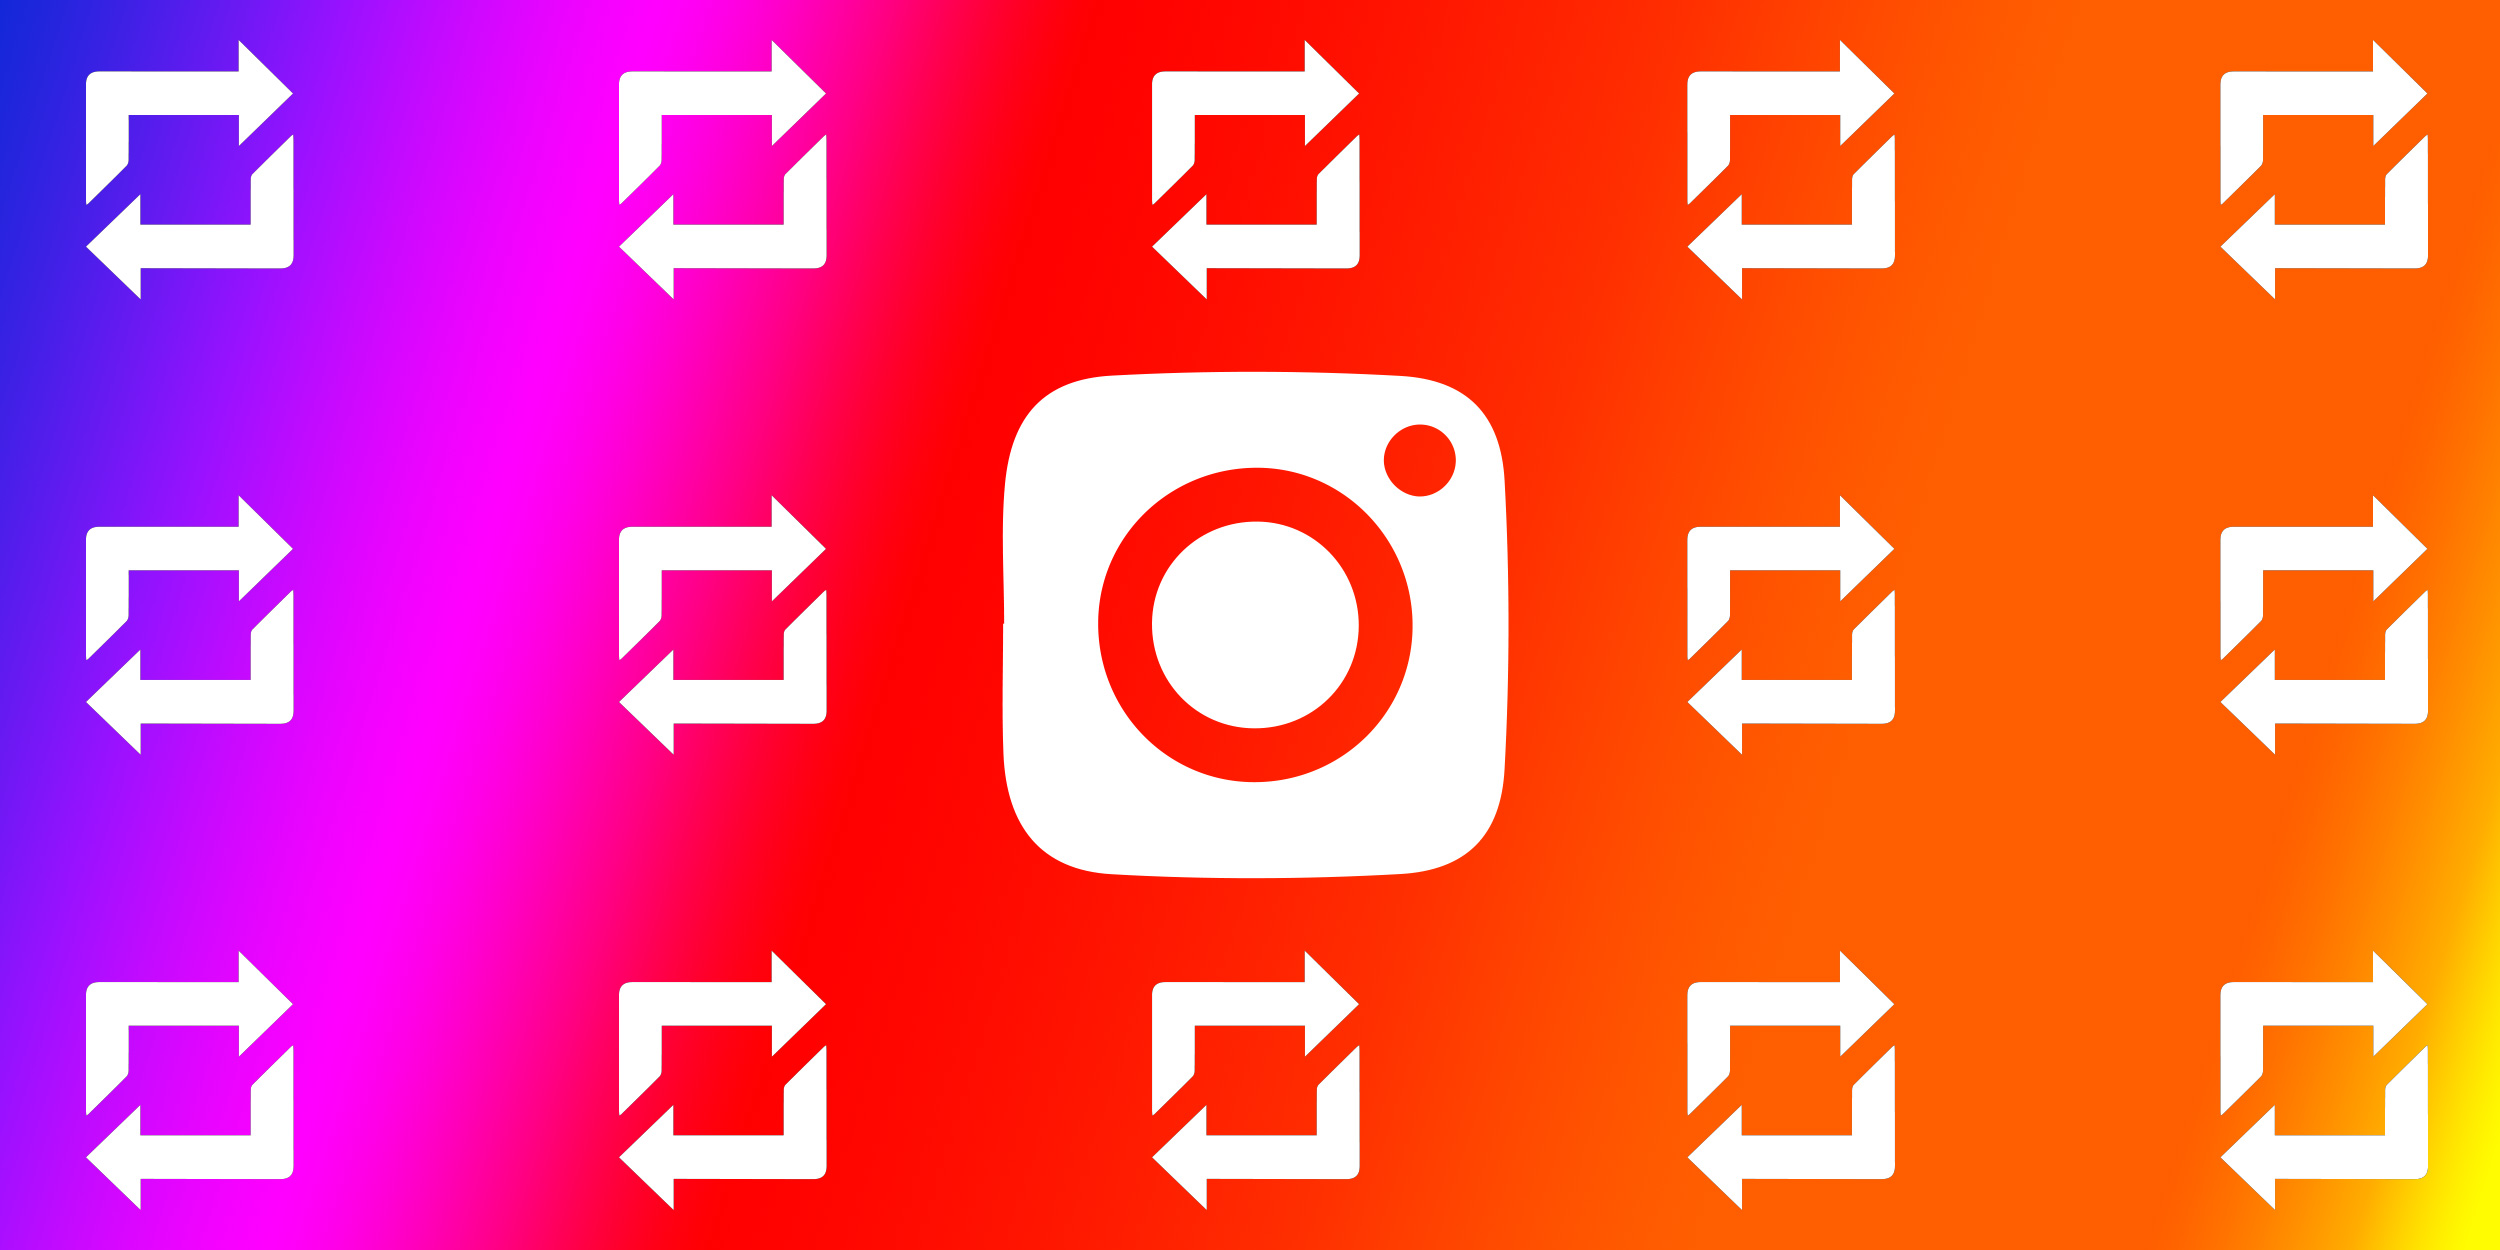 Как сделать репост stories в Instagram – простые инструкции